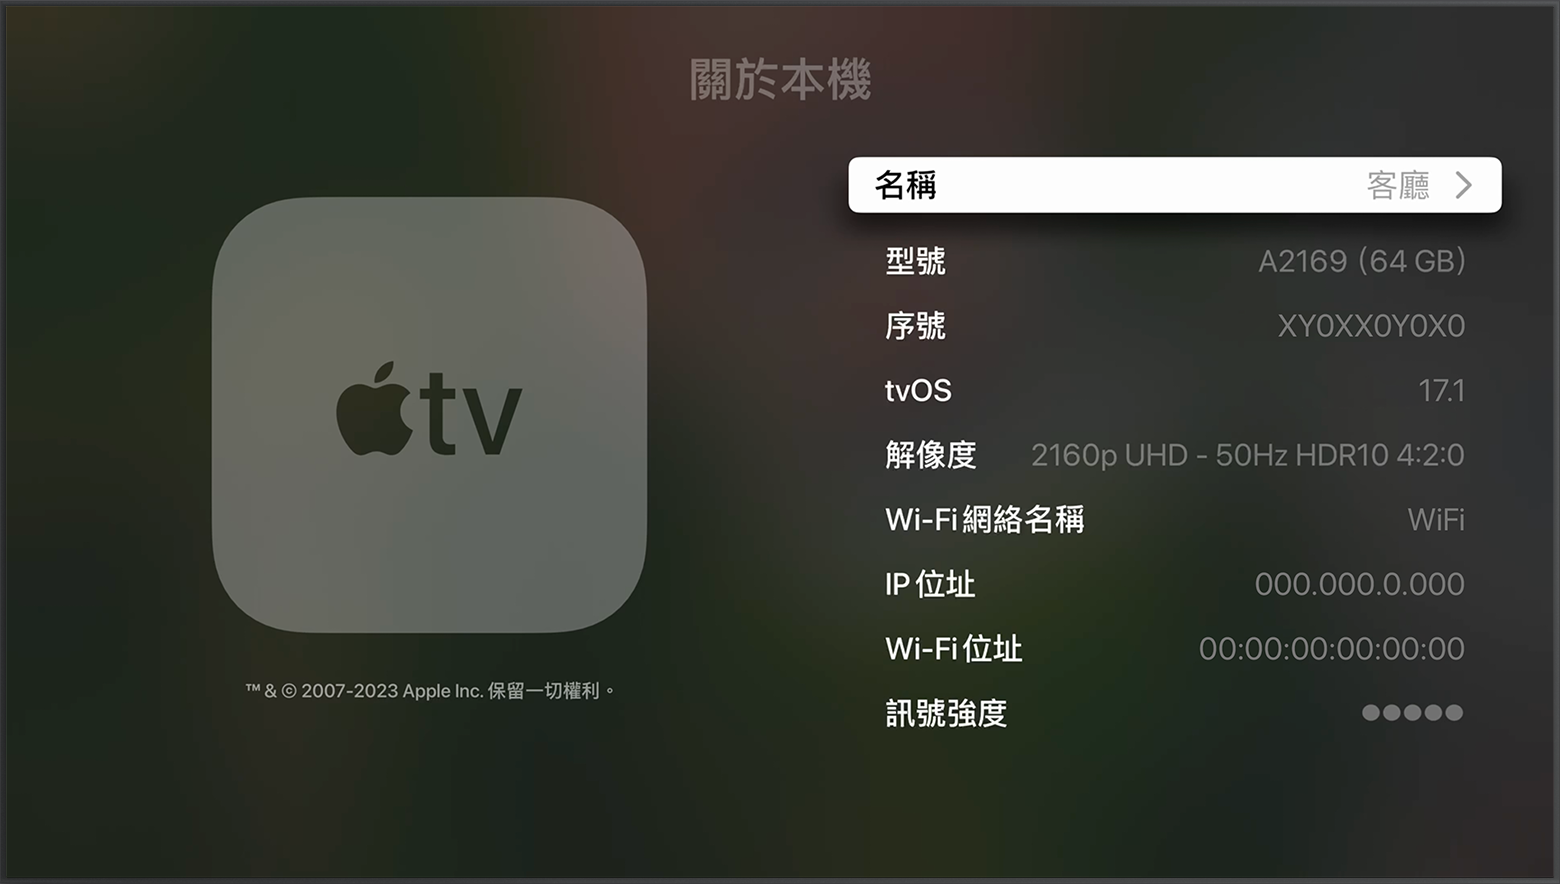 Apple TV 的「關於本機」畫面頂部附近正顯示序號